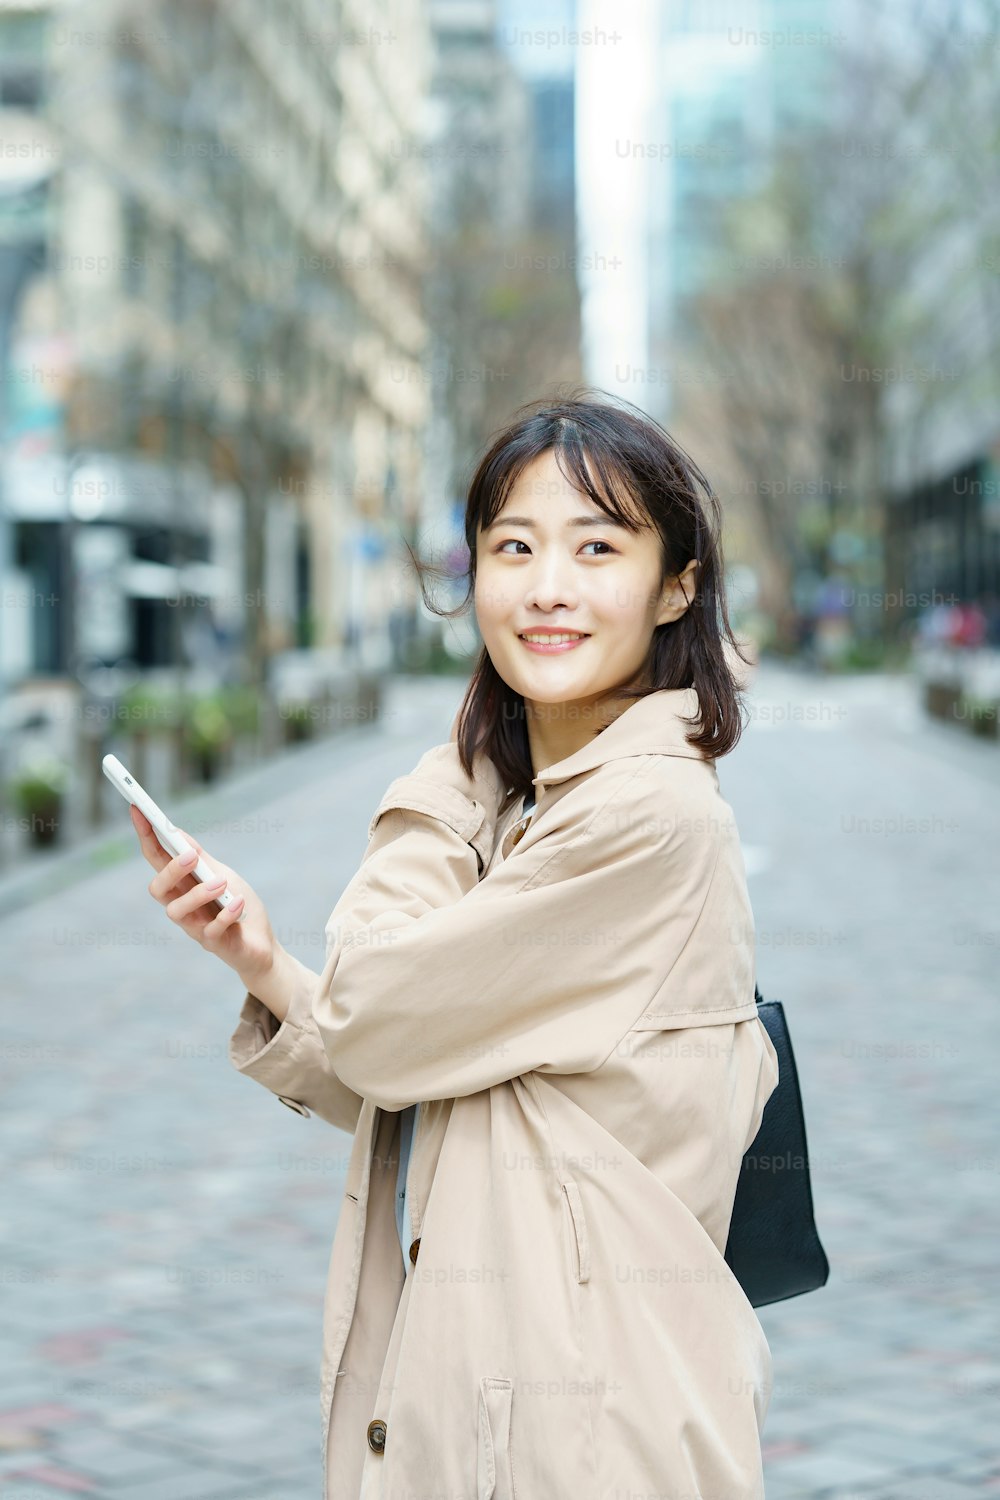 Eine Frau, die mit einem Smartphone in der Hand in einem Geschäftsviertel spazieren geht